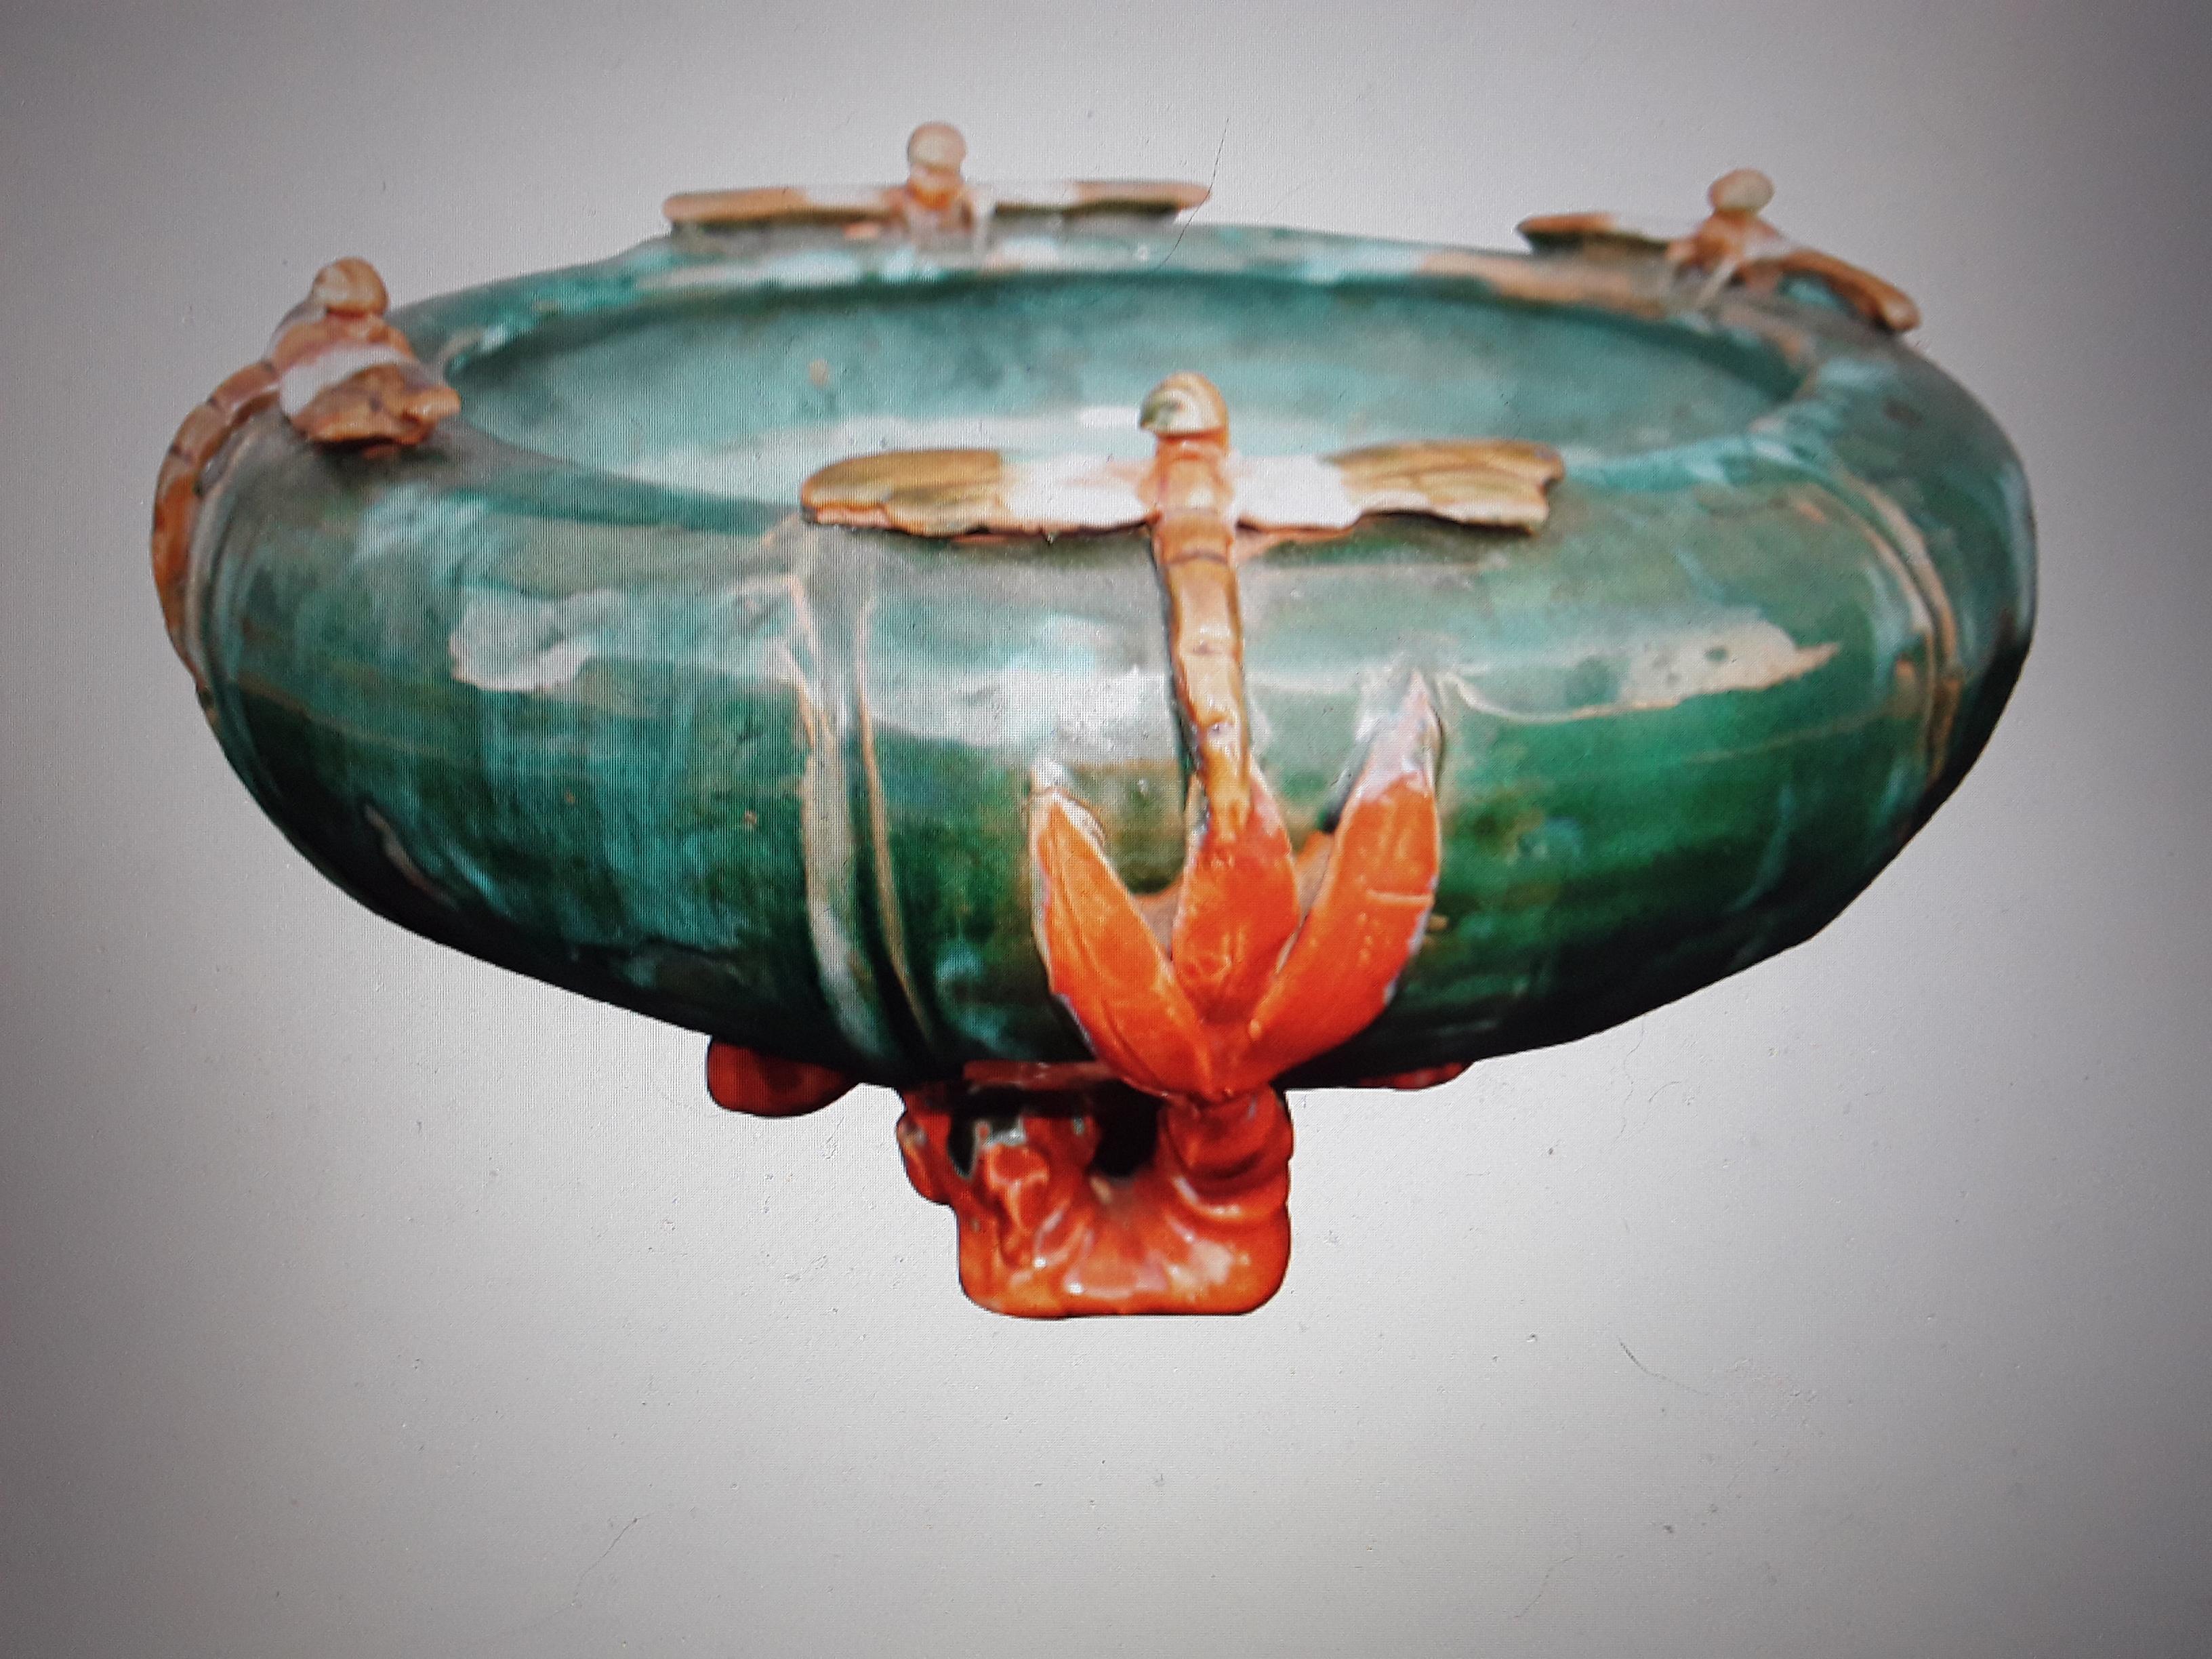 c1890 Antique French Art Nouveau Glazed Terracotta Decorative Bowl/ Dragonflies 8